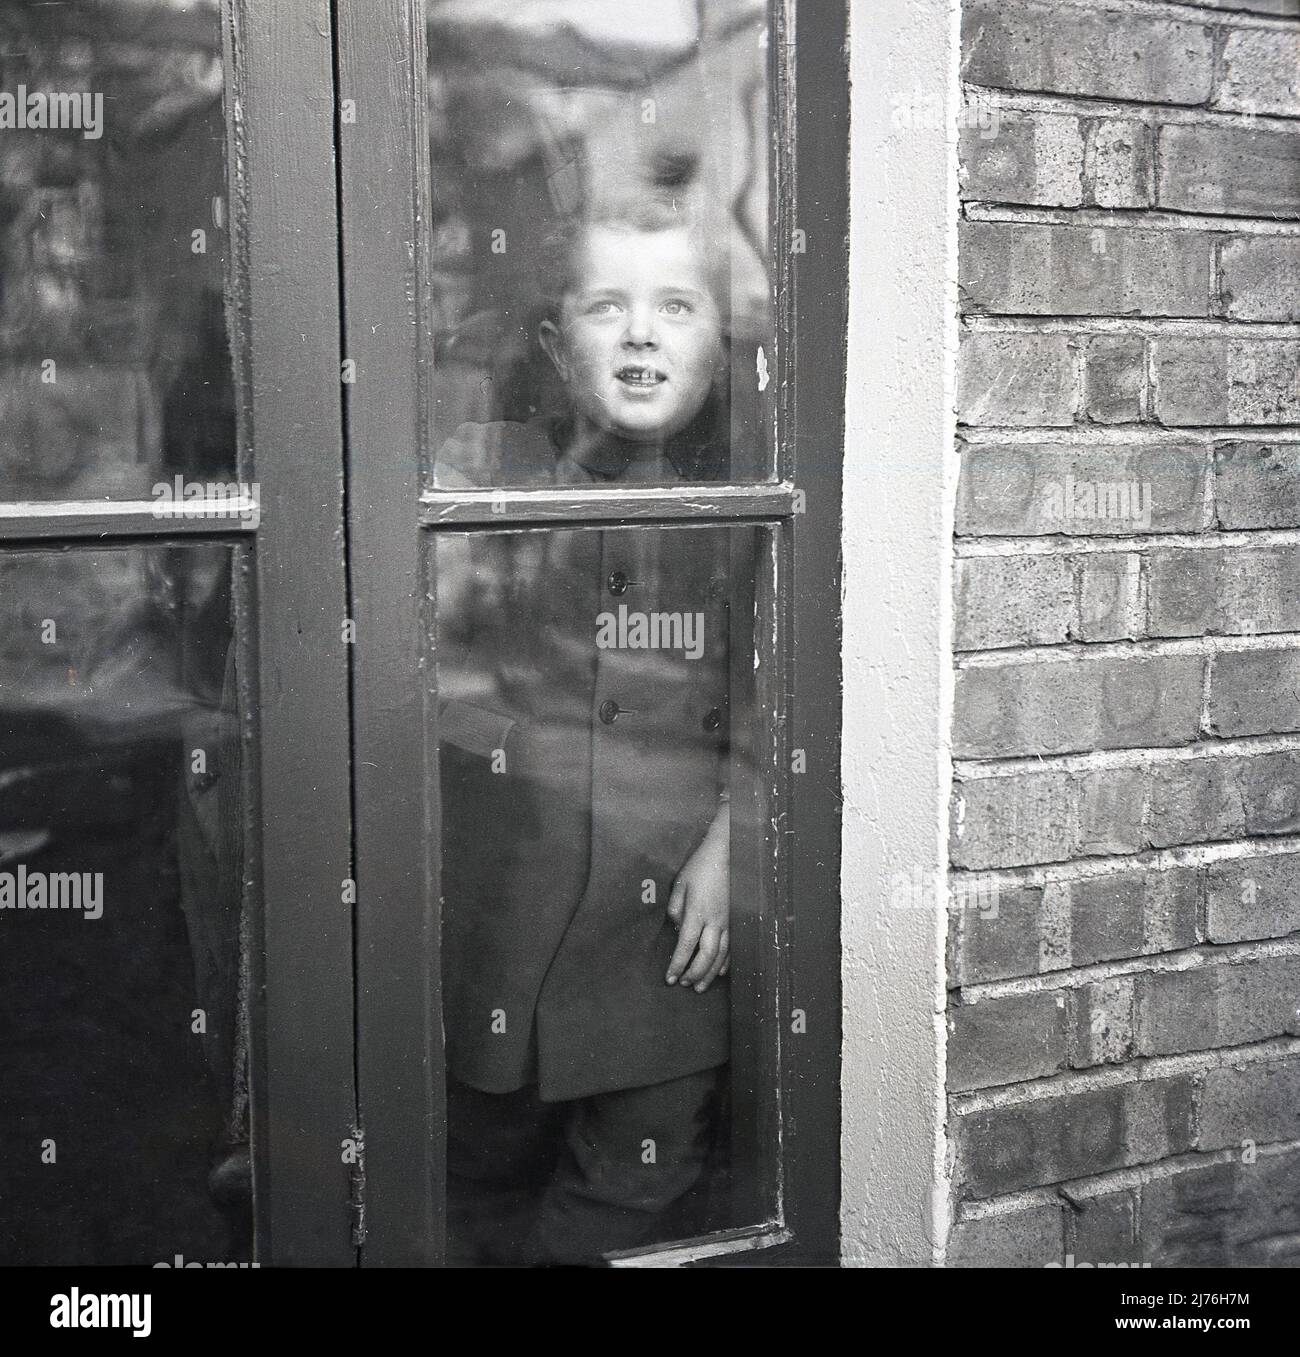 1950s, historique, un jeune garçon à l'intérieur debout à des portes françaises en bois, regardant dehors, Angleterre, Royaume-Uni. Banque D'Images